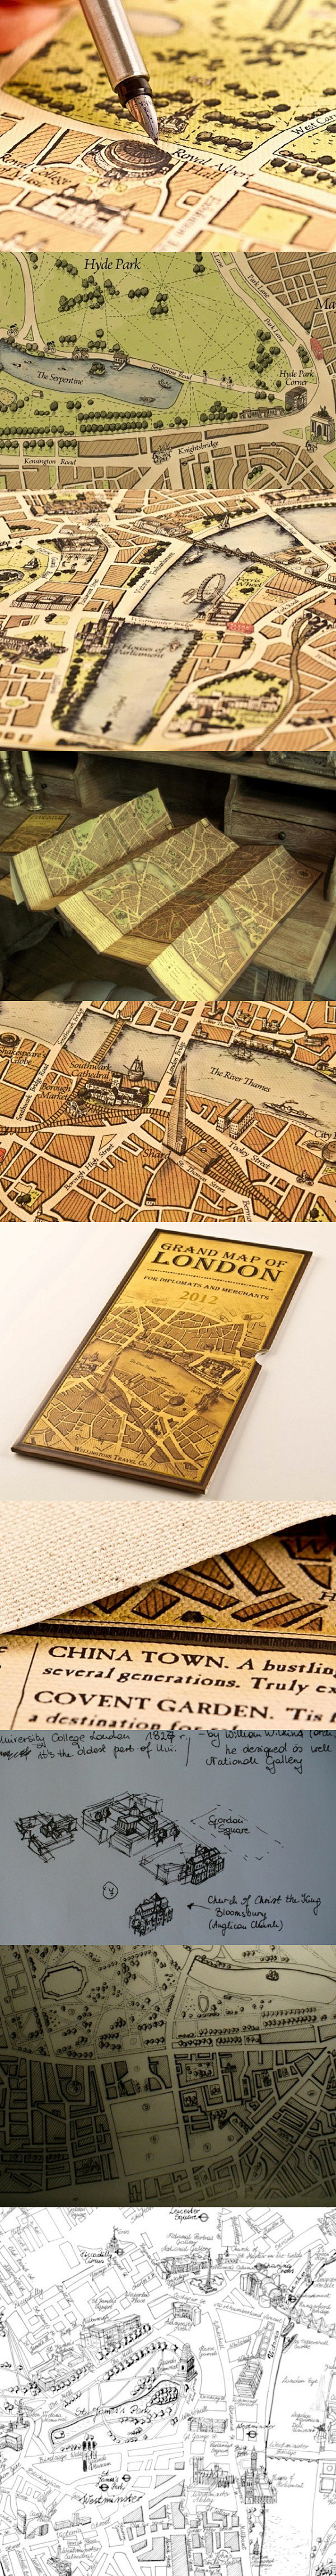 手繪倫敦地圖